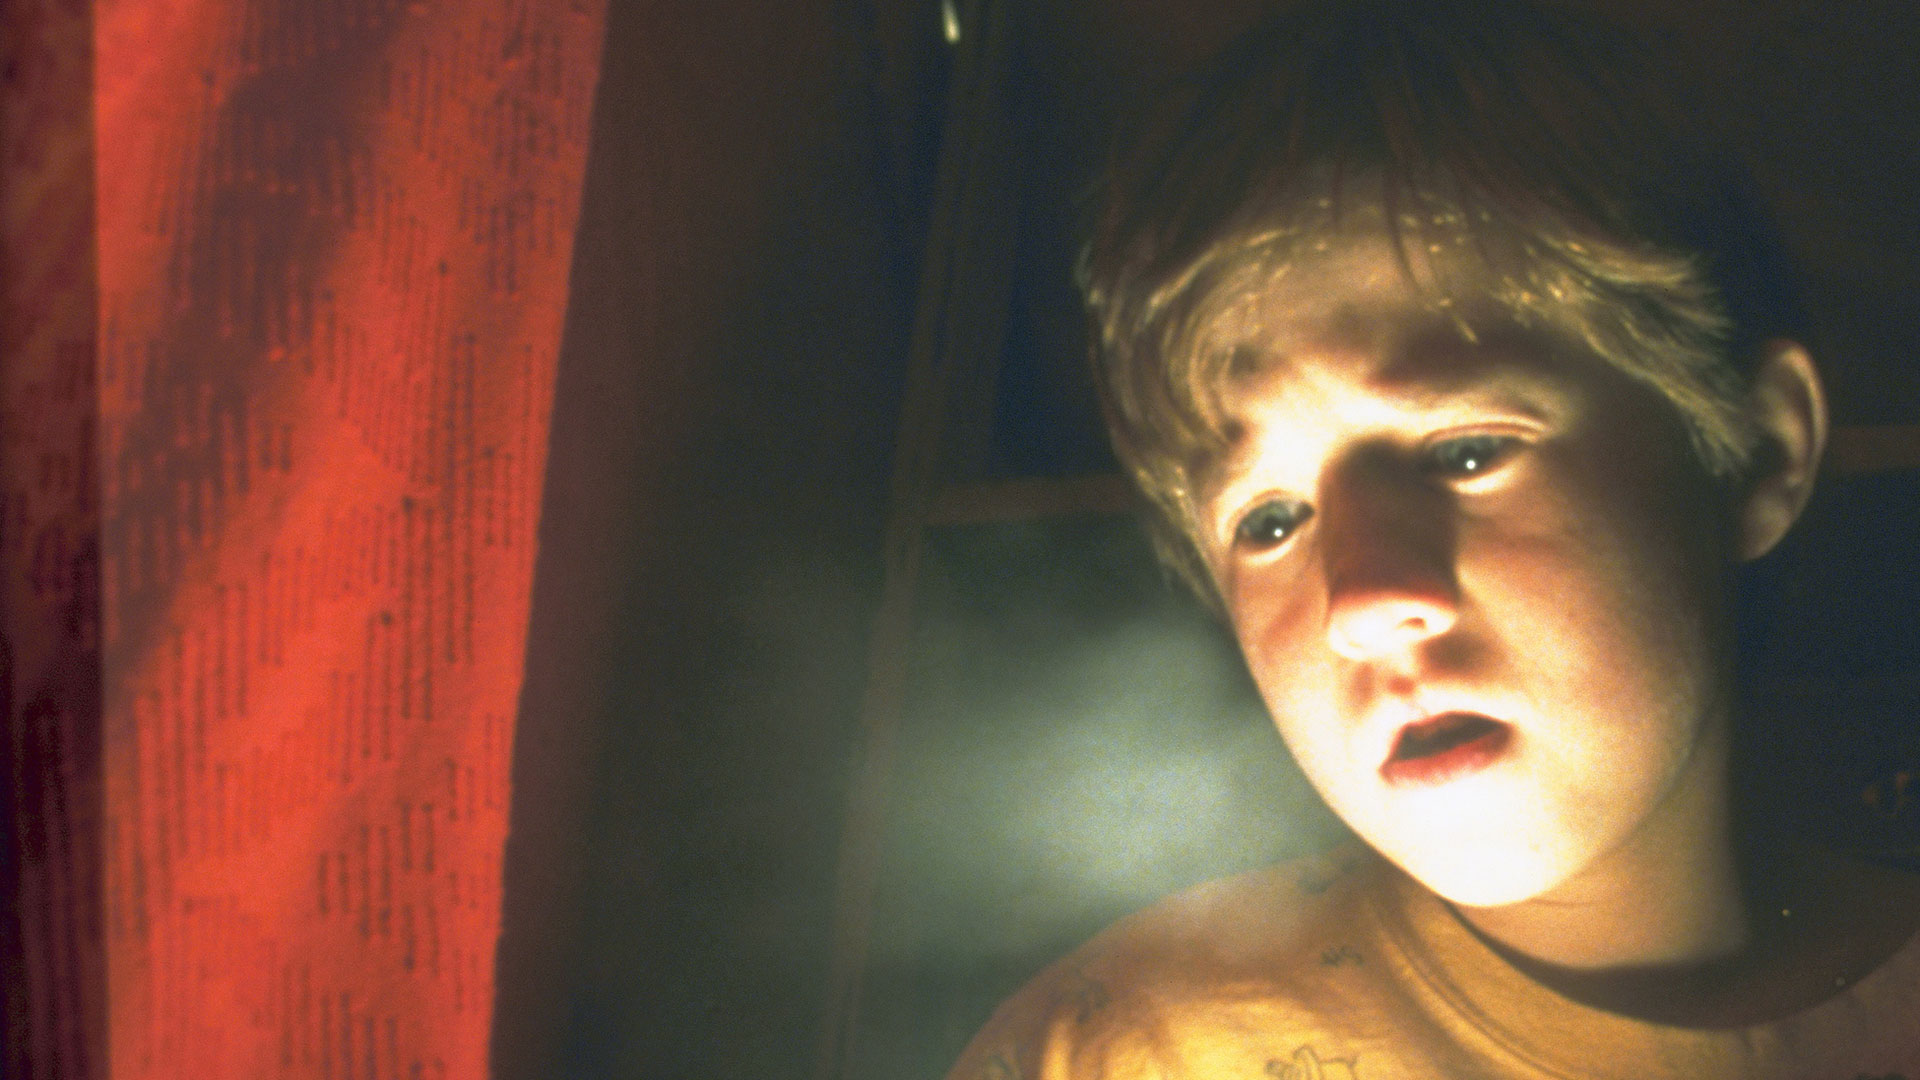 La película "sexto sentido", que se estrenó en 1999, ponía a un niño como protagonista y a su capacidad para comunicarse con el "más allá" como punto esencial del argumento